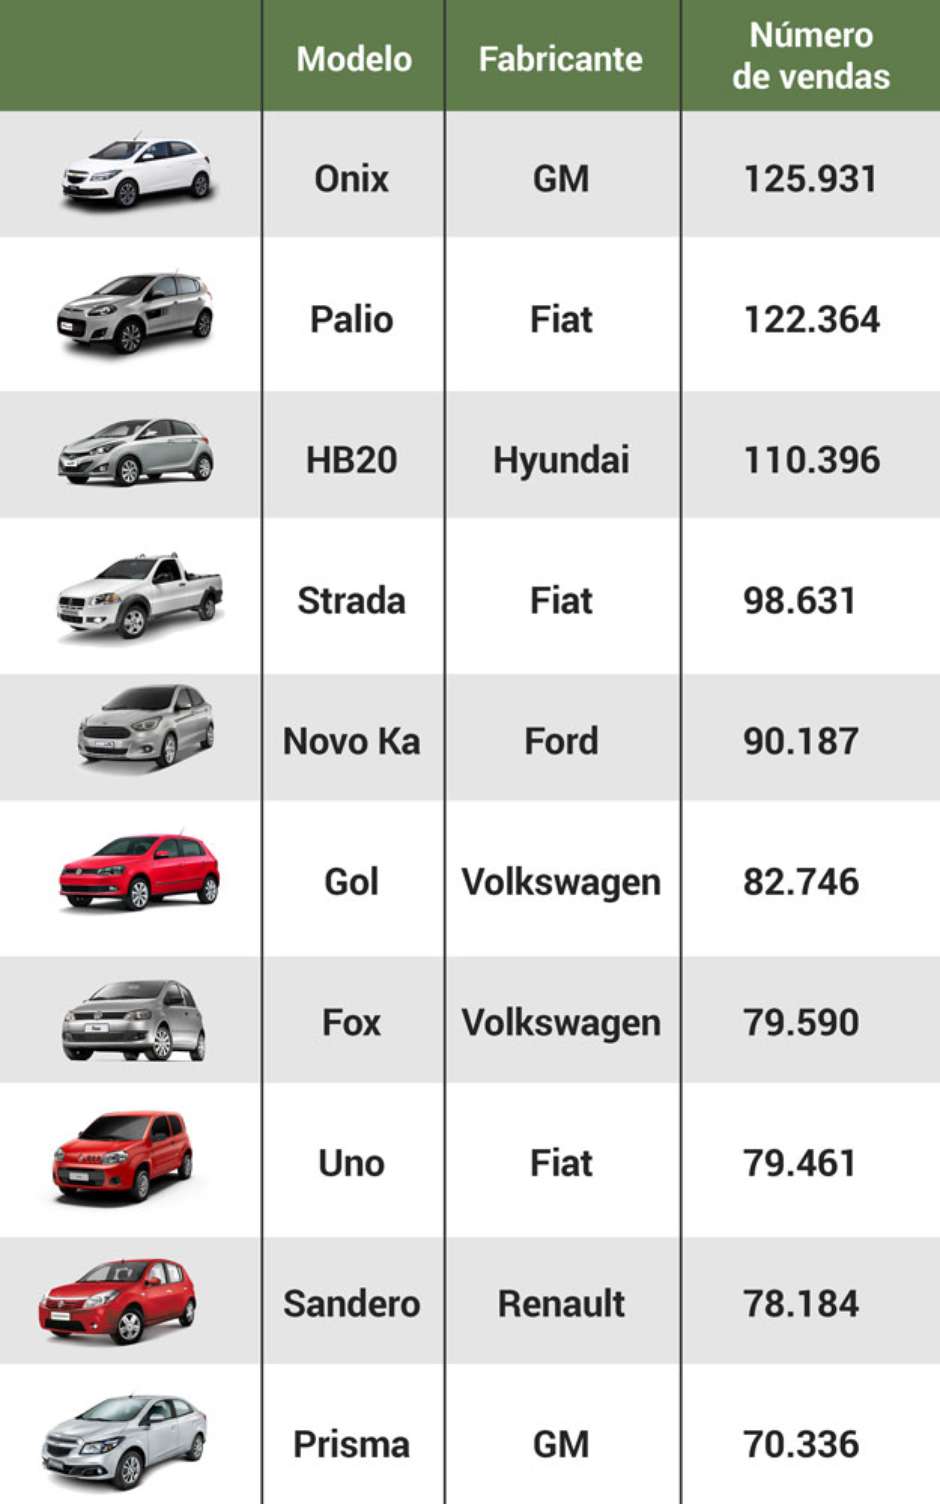 Auto Esporte - Chevrolet Onix deve fechar 2015 como o carro mais vendido do  Brasil